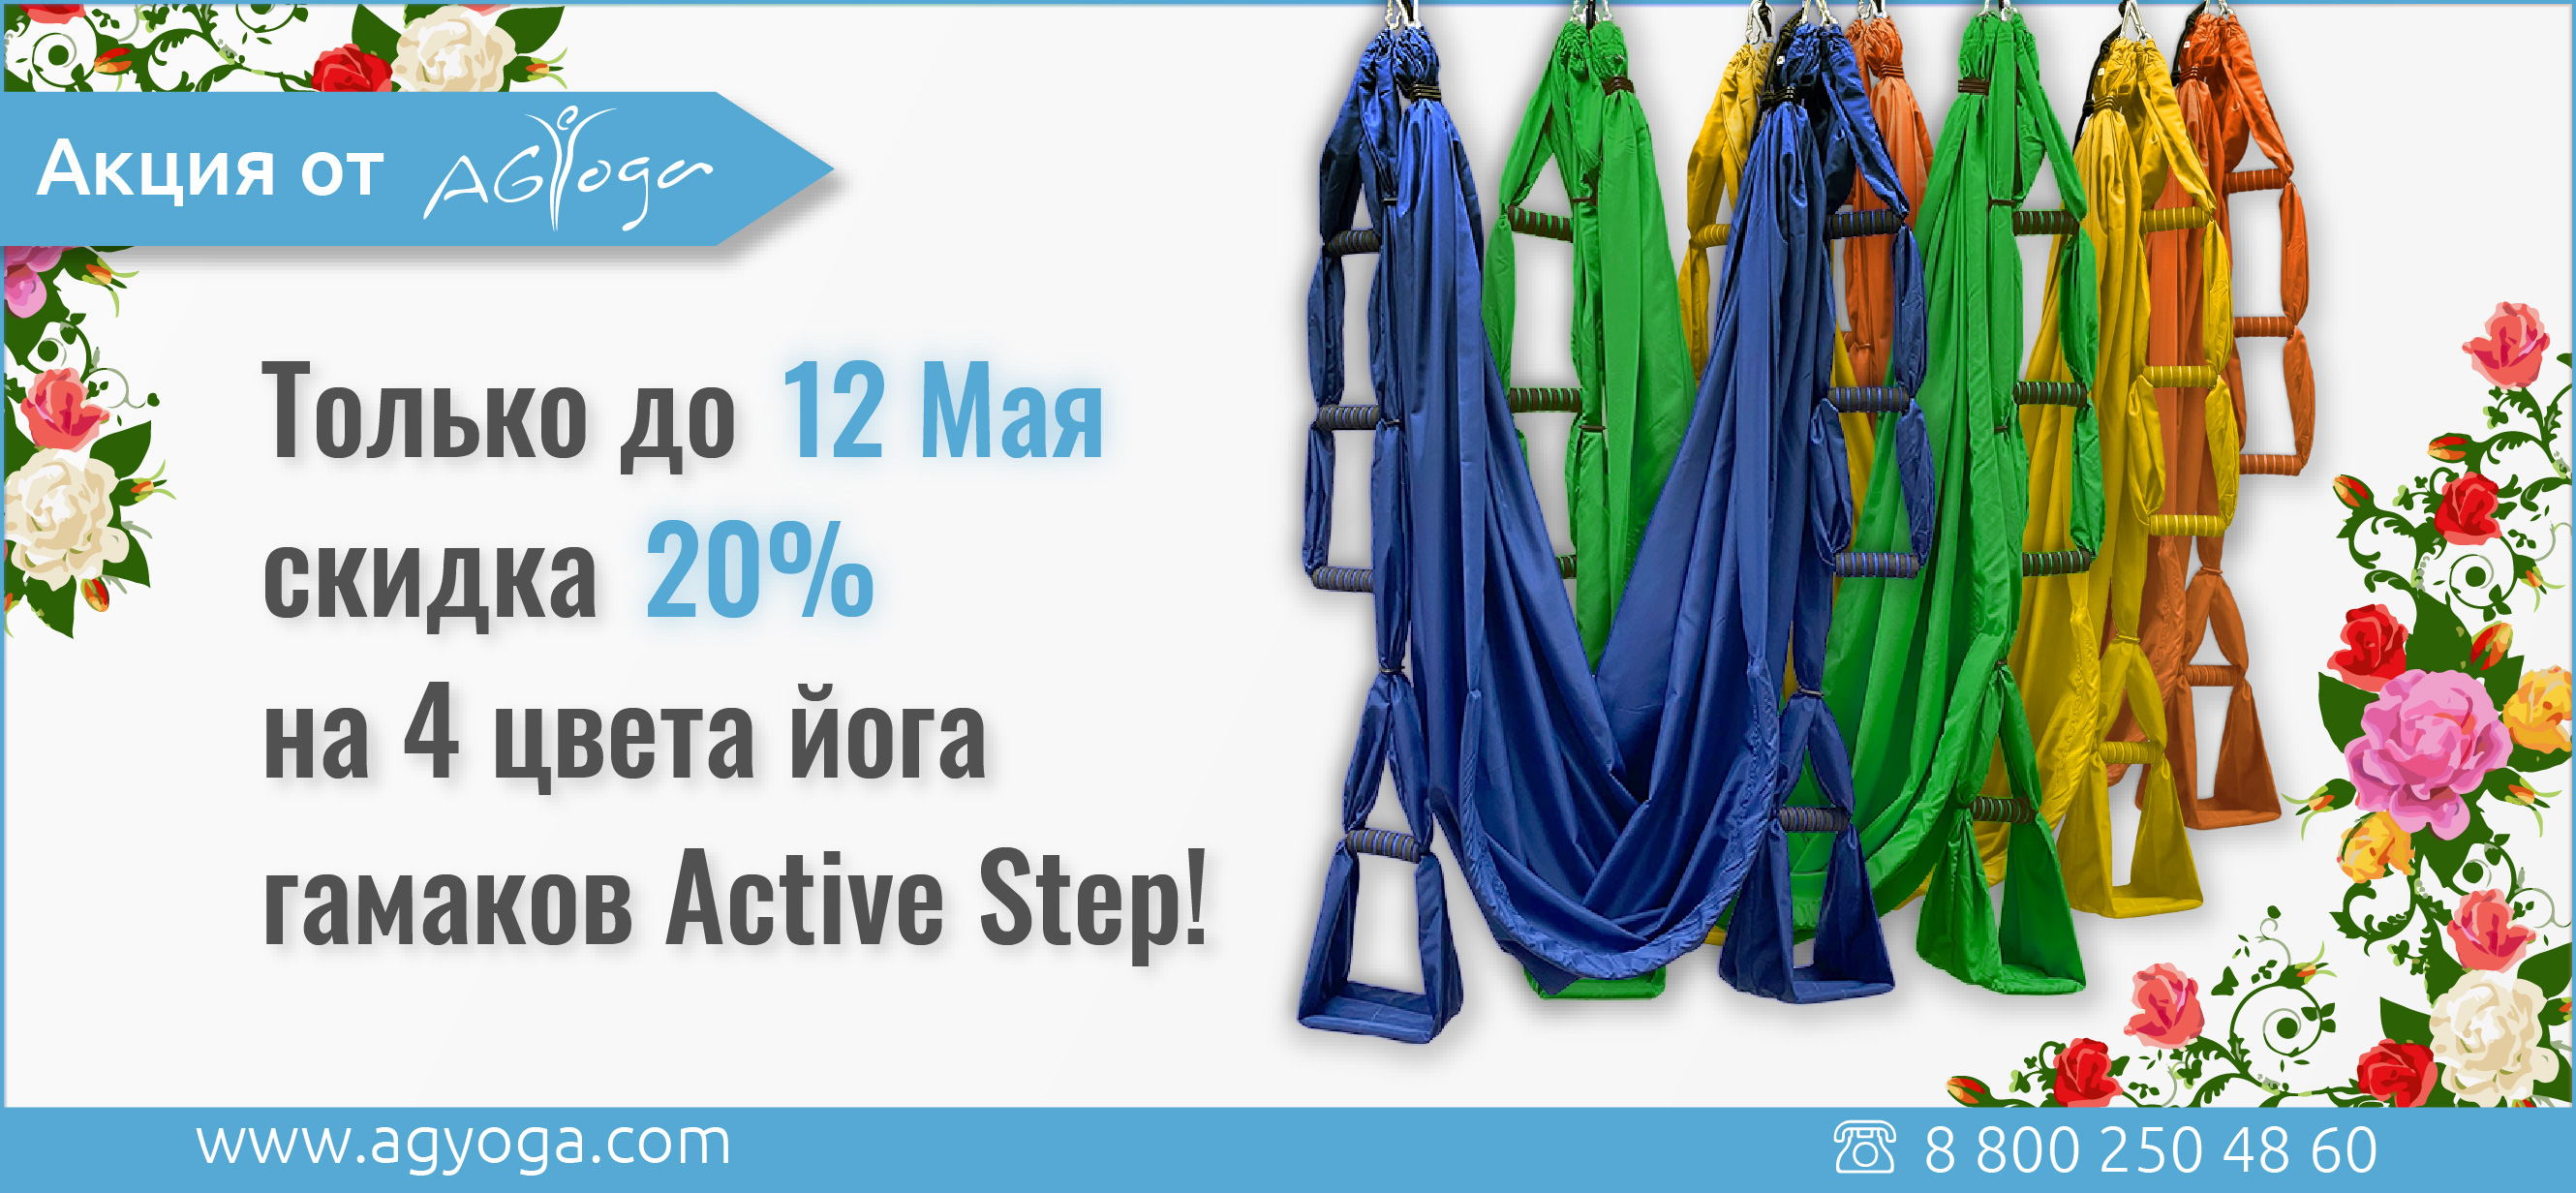 Только до 12 Мая скидка 20% на 4 цвета модели Active Step!